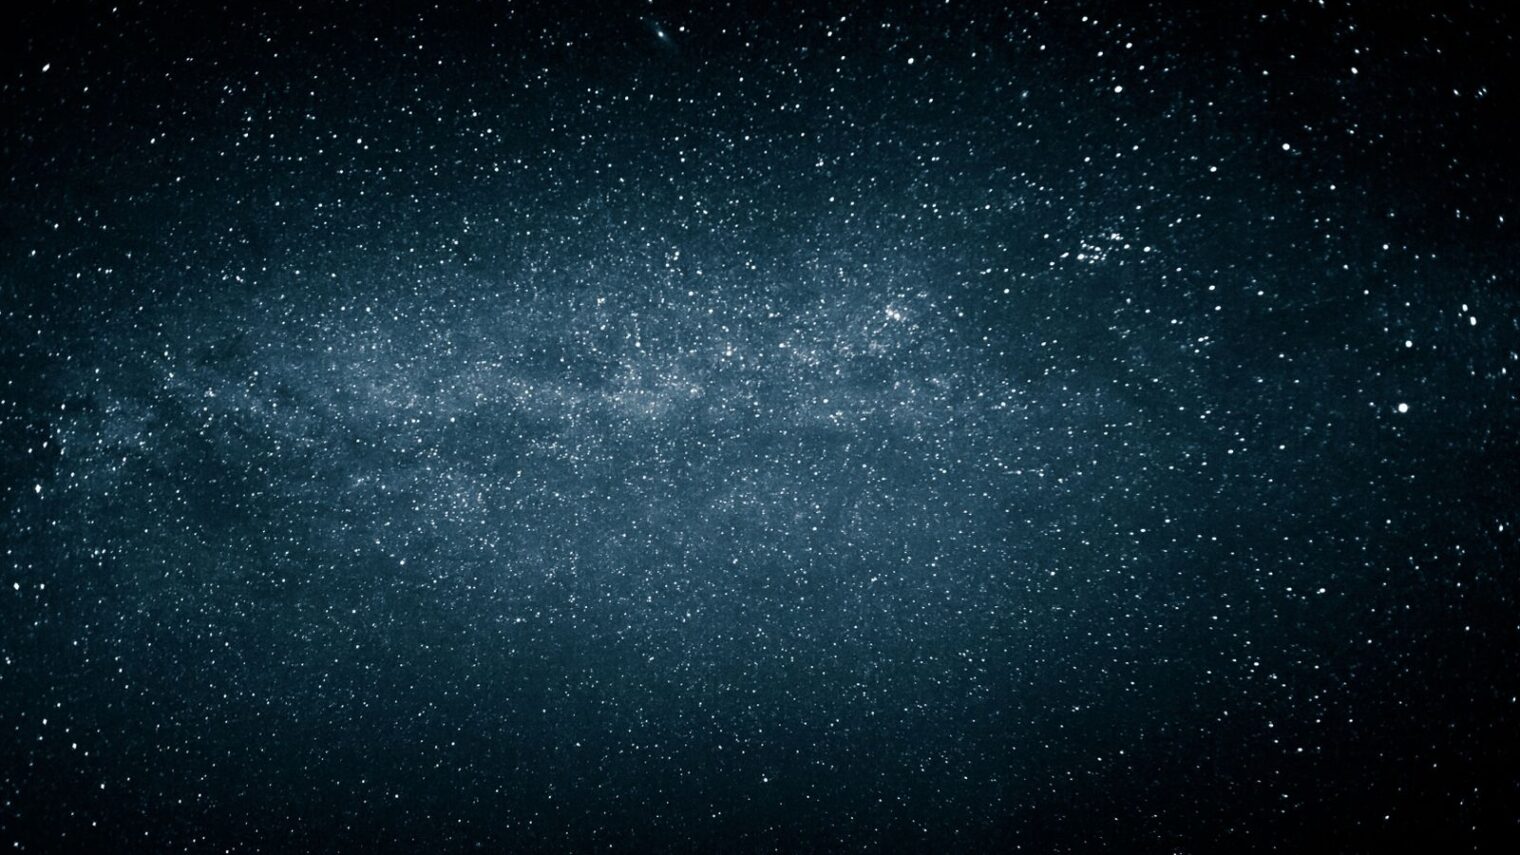 Milky Way image by Csehak Szabolcs/Shutterstock.com